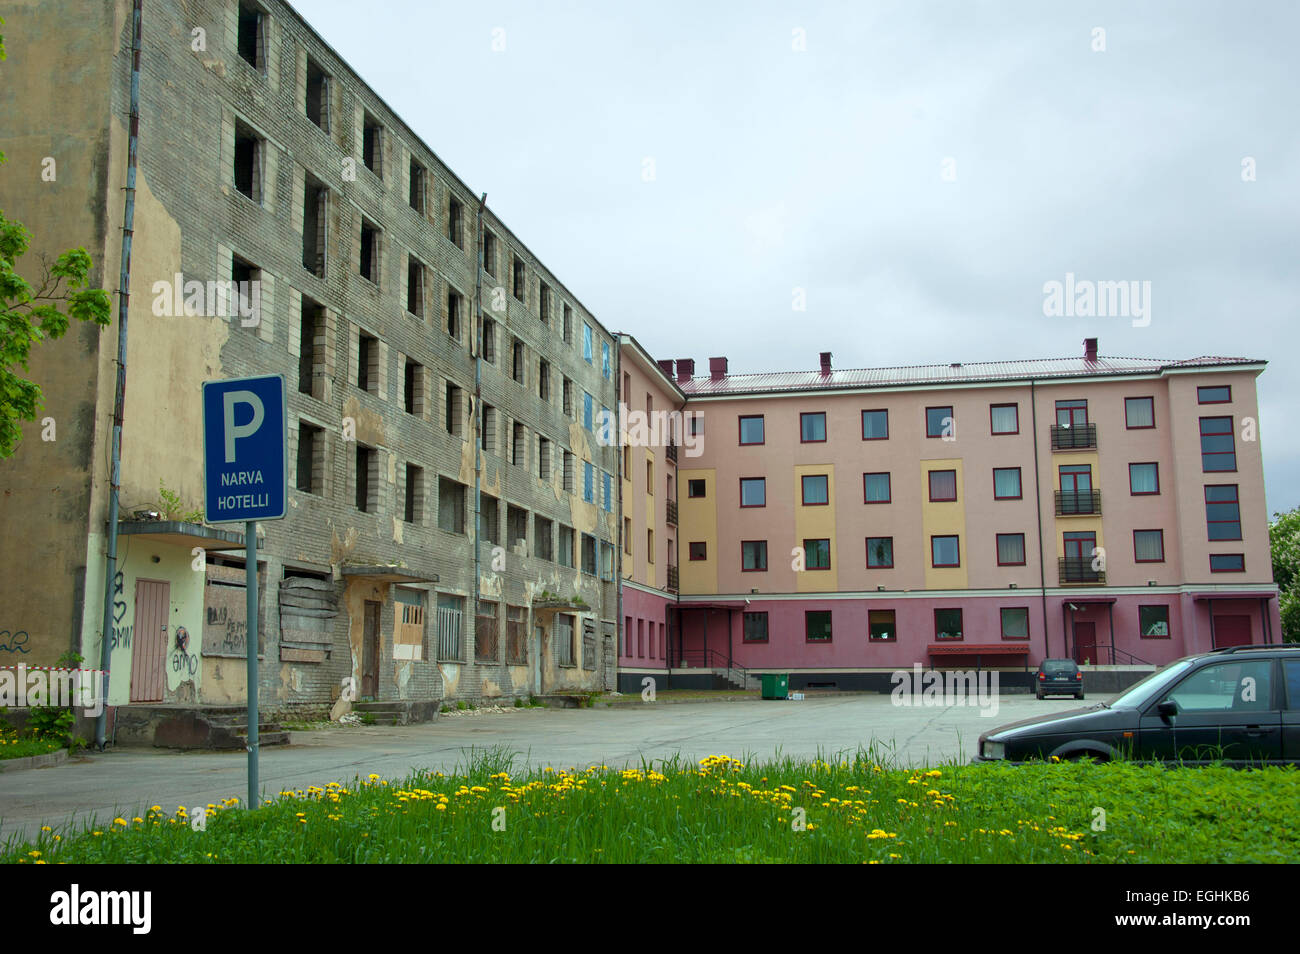 House, Narva, Estonia, Baltic states, Europe Stock Photo